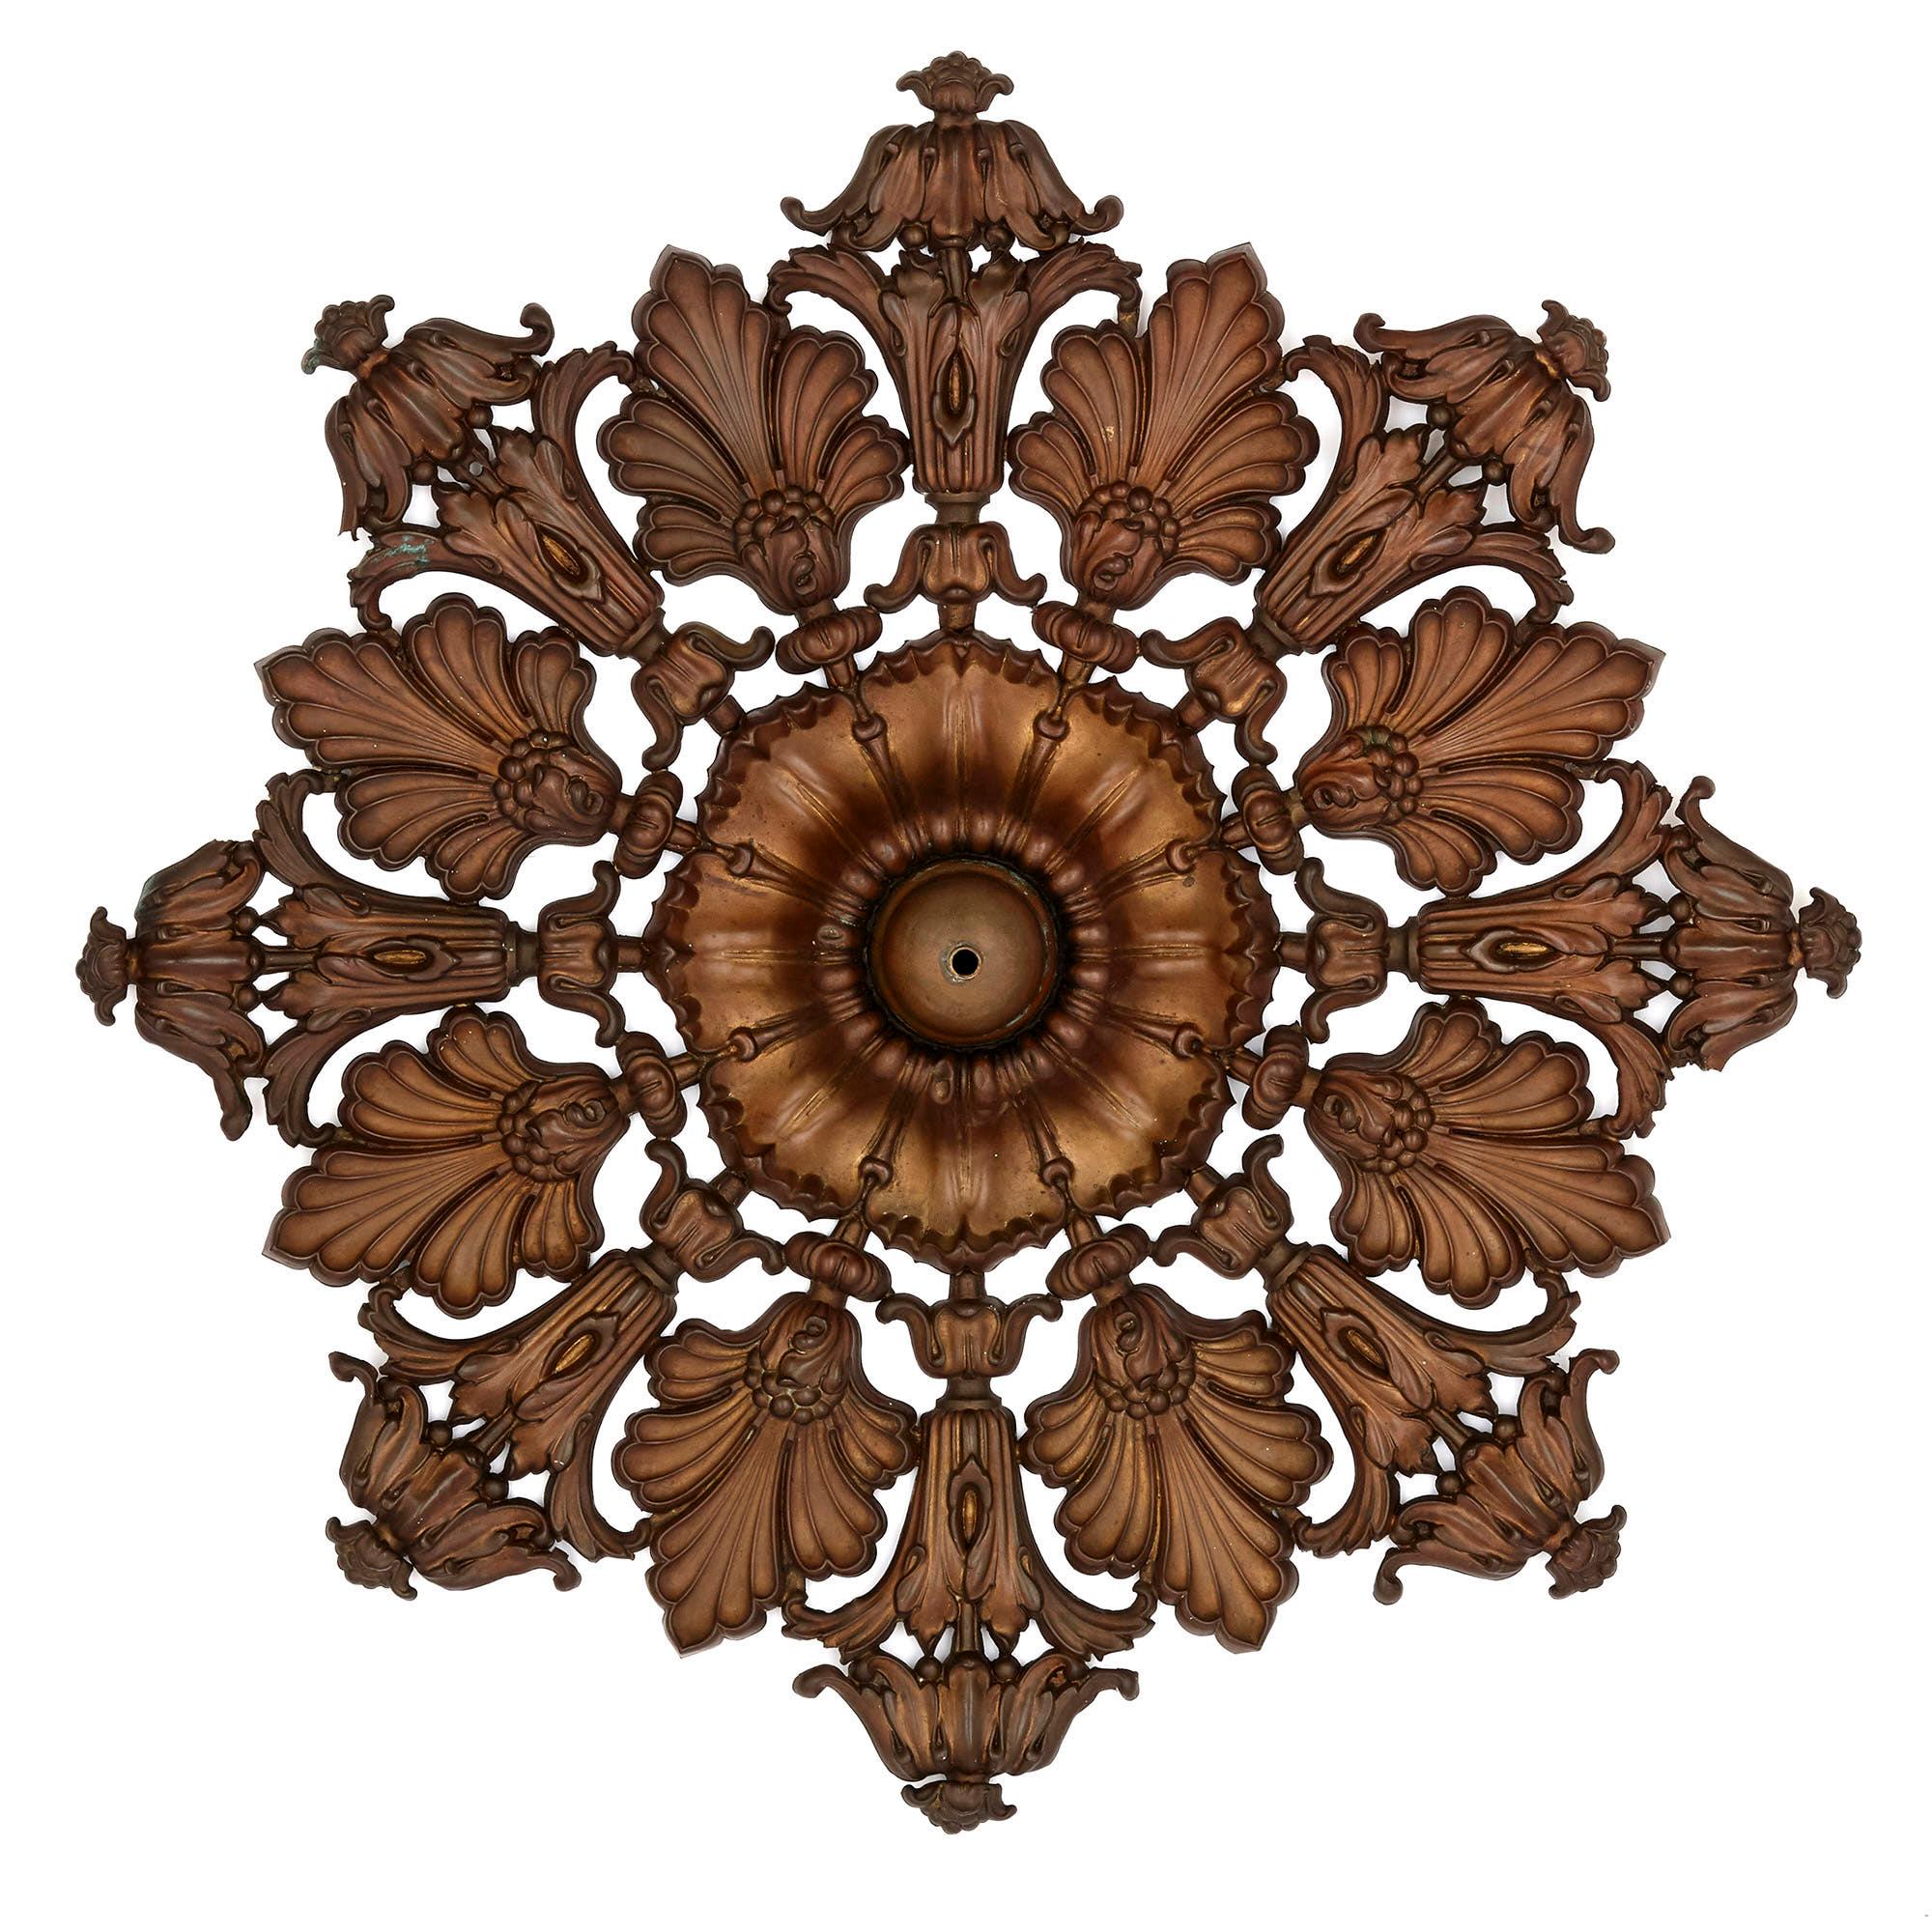 Paire de rosaces de plafond décoratives en laiton de style Régence anglaise
Anglais, vers 1830
Mesures : Profondeur 12cm, diamètre 92cm

Chaque rosace de cette paire est fabriquée en laiton, qui a été doucement doré pour produire une patine